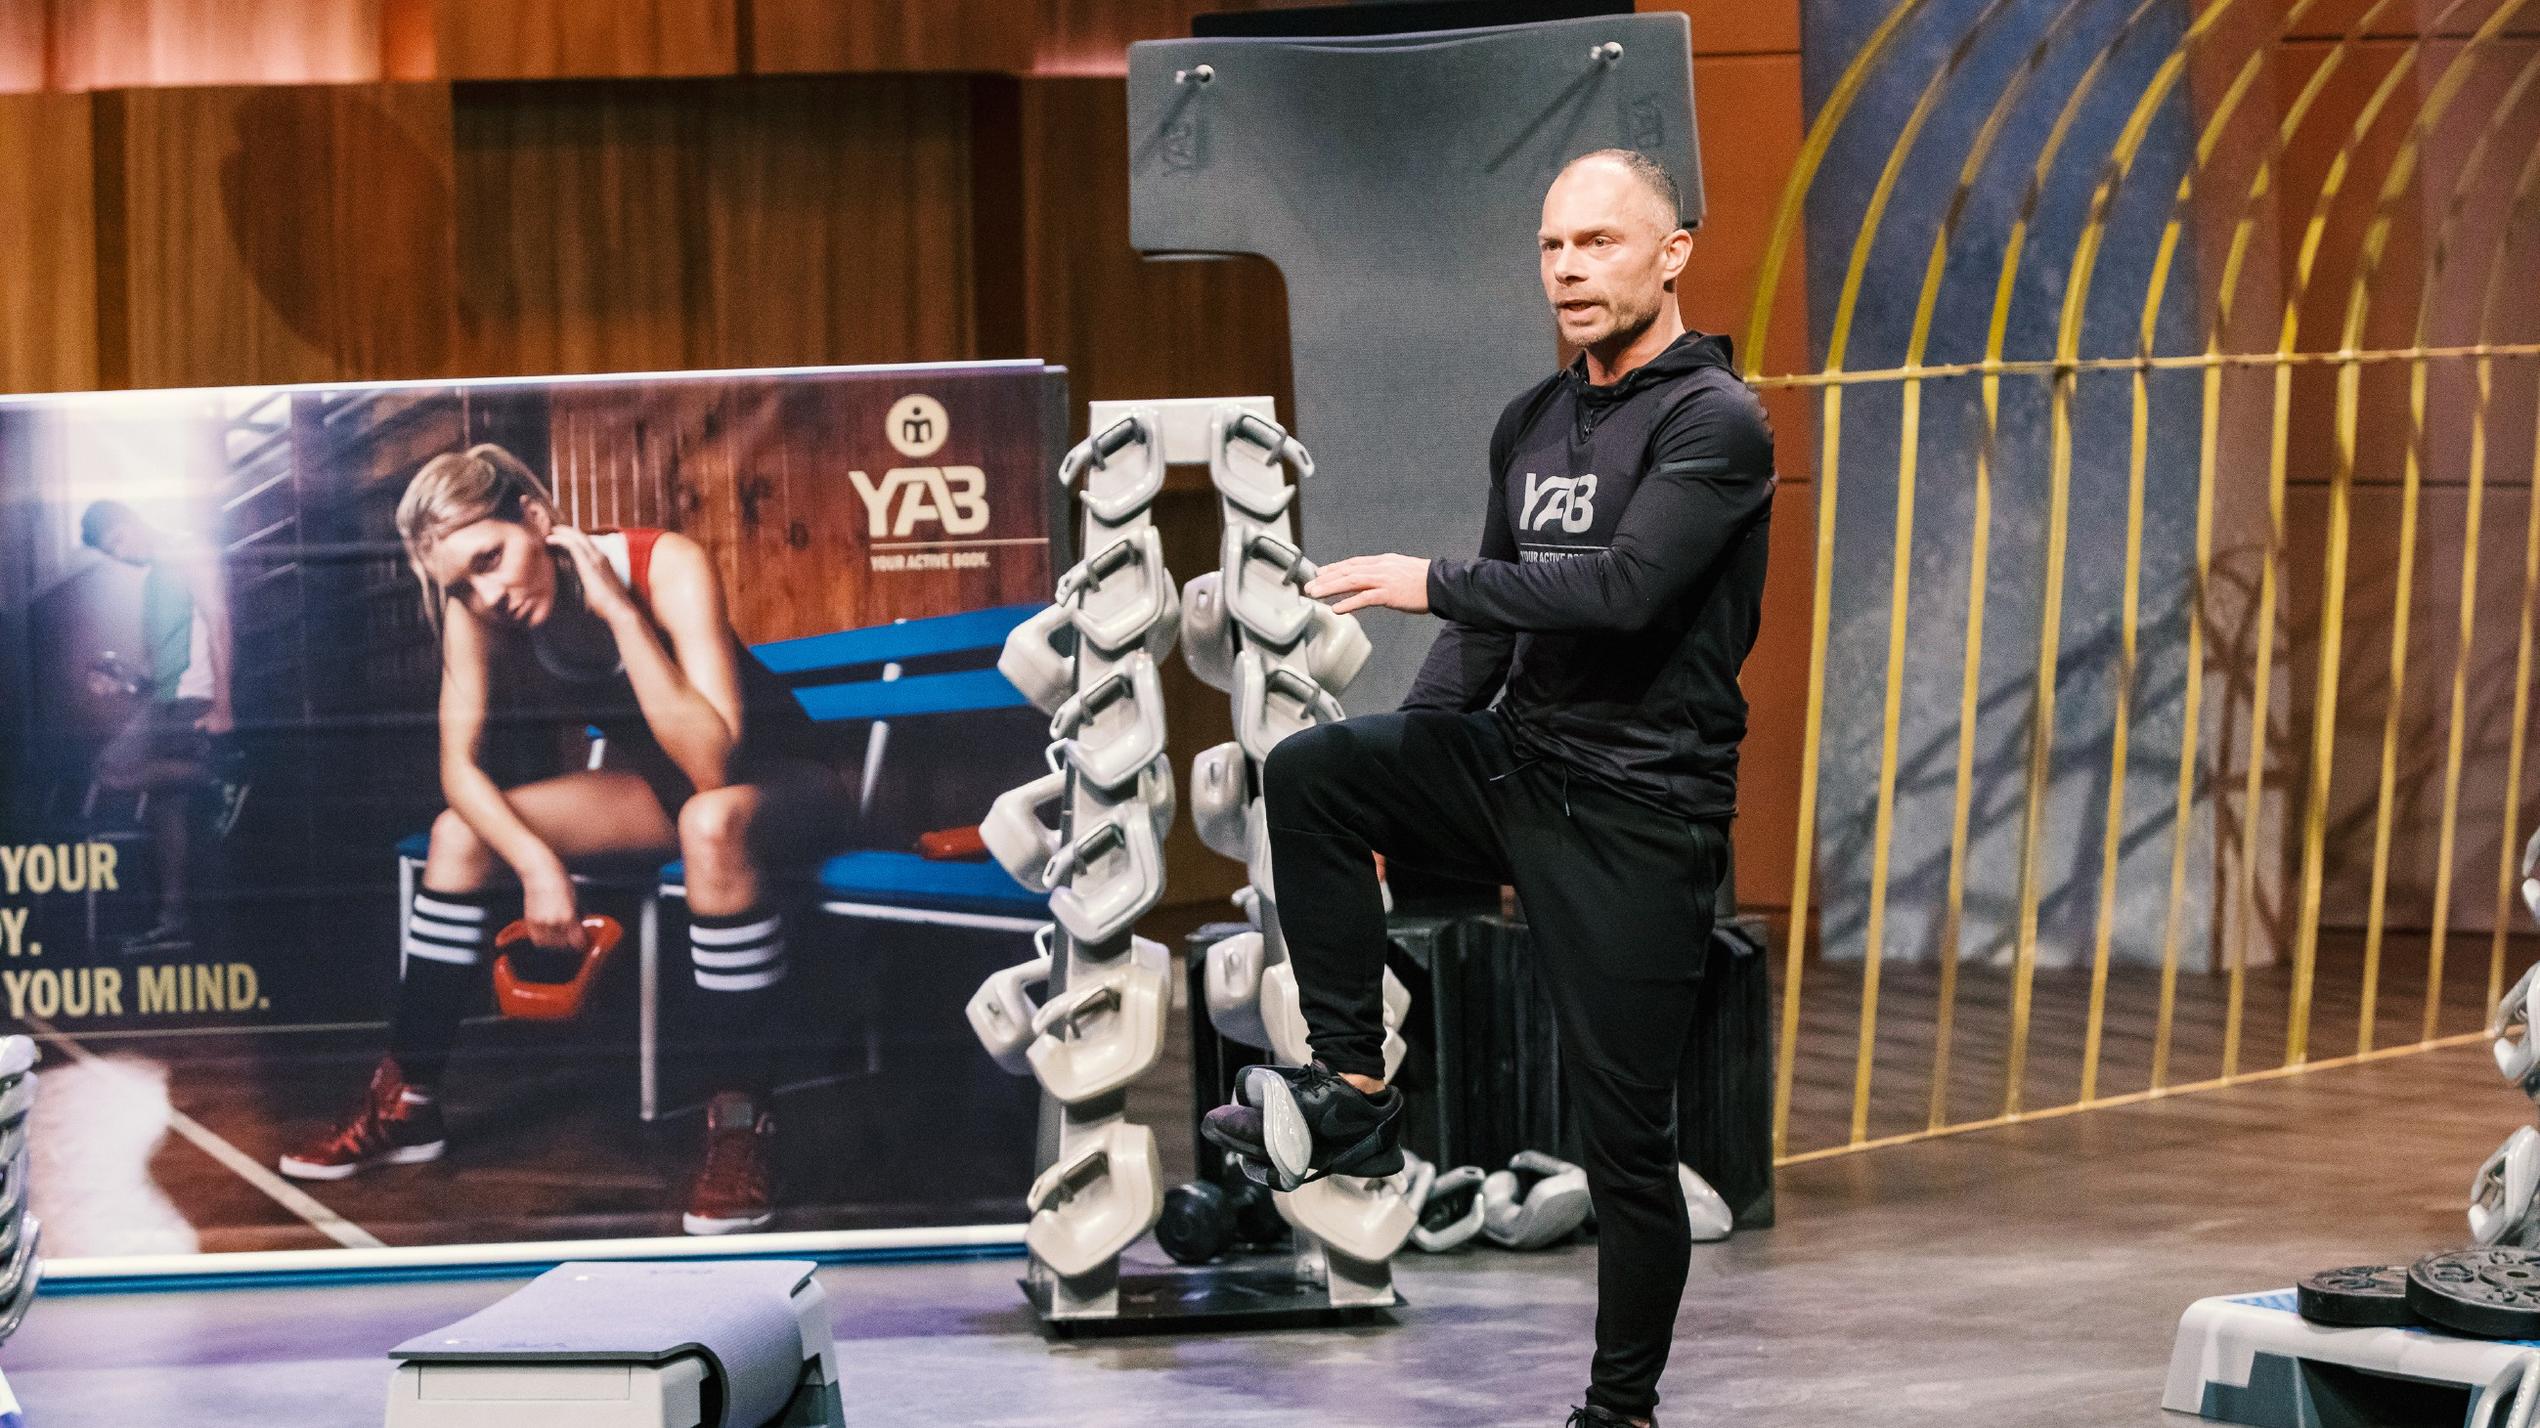 Christian Polenz aus Buxtehude präsentiert mit "YAB Fitness" eine ergonomische Fitnesshantel. Er erhofft sich ein Investment von 150.000 Euro für 15 Prozent der Anteile an seinem Unternehmen.